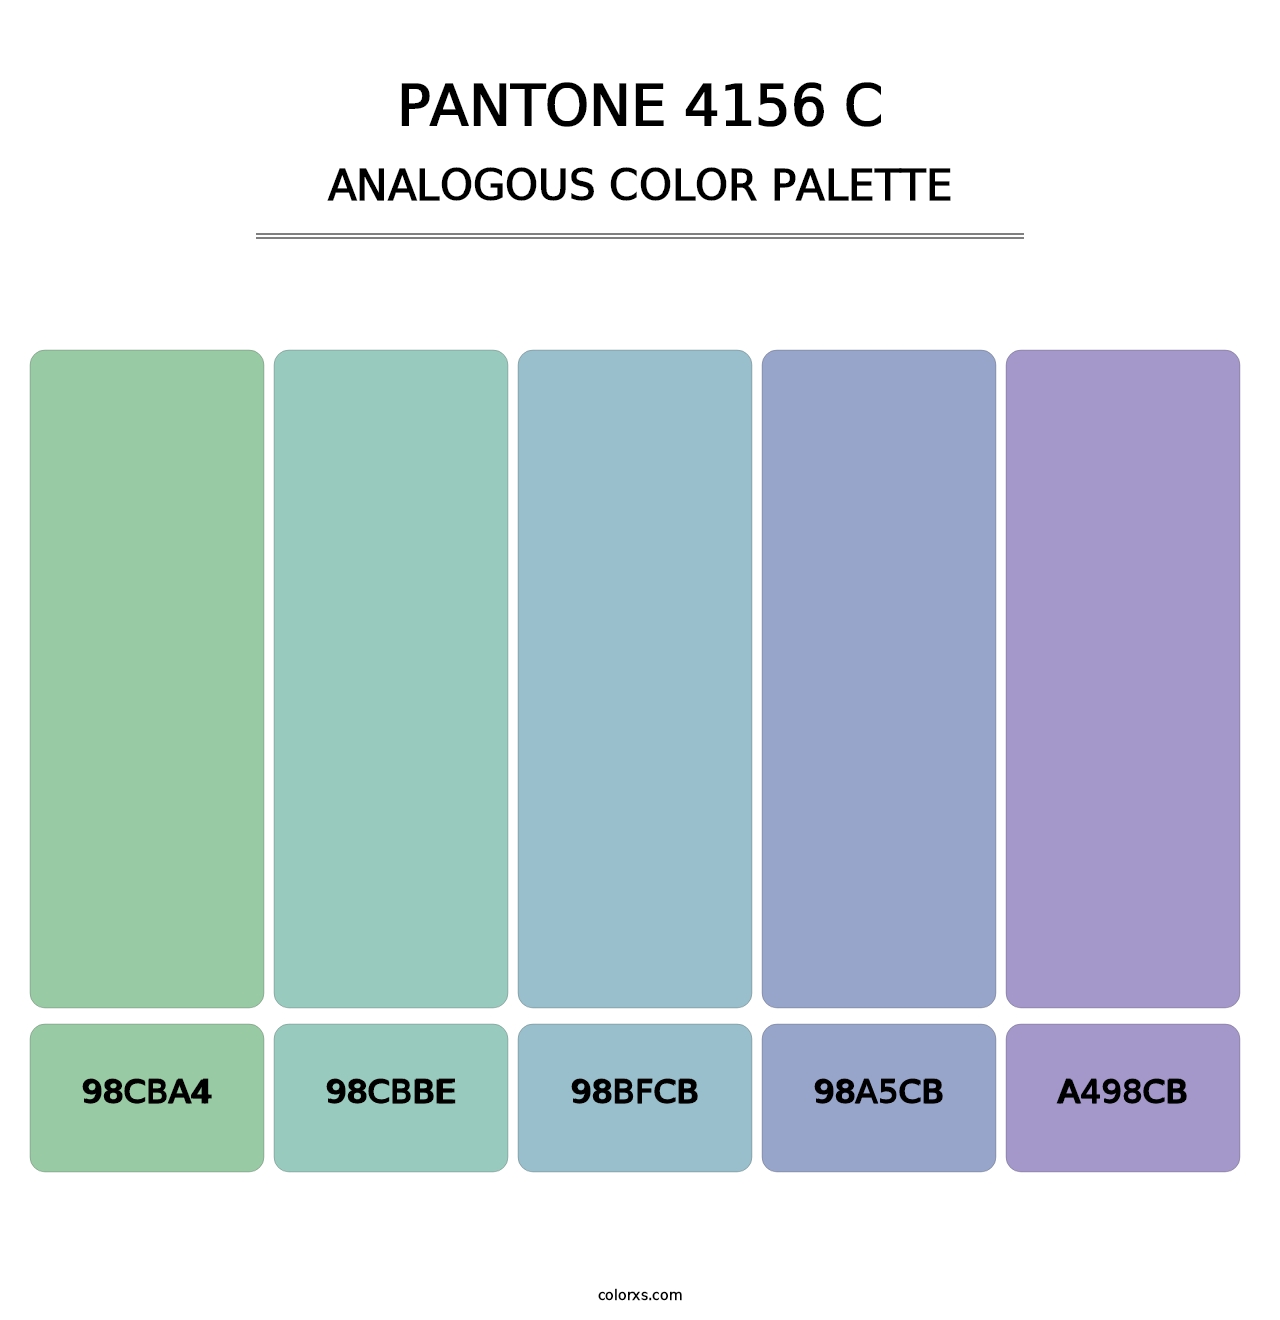 PANTONE 4156 C - Analogous Color Palette